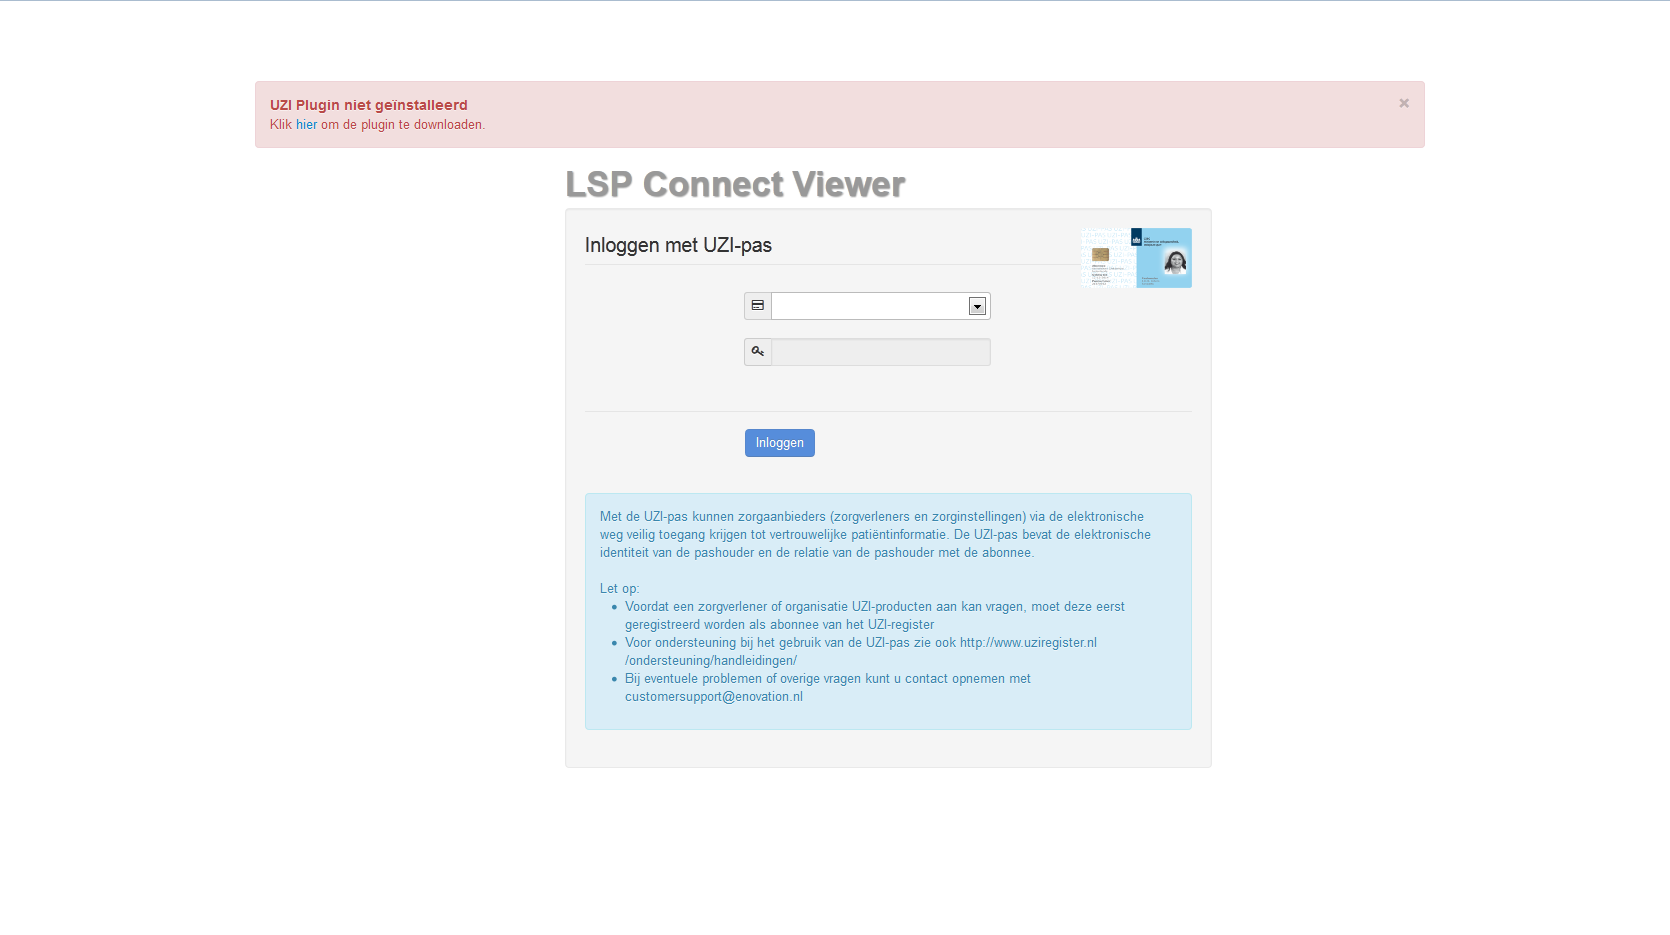 2.1 Browsers De lspconnect Viewer maakt gebruik van een browser-plug-in. Bij eerste gebruik zal een melding worden gegeven dat deze plug-in nog niet is geïnstalleerd.